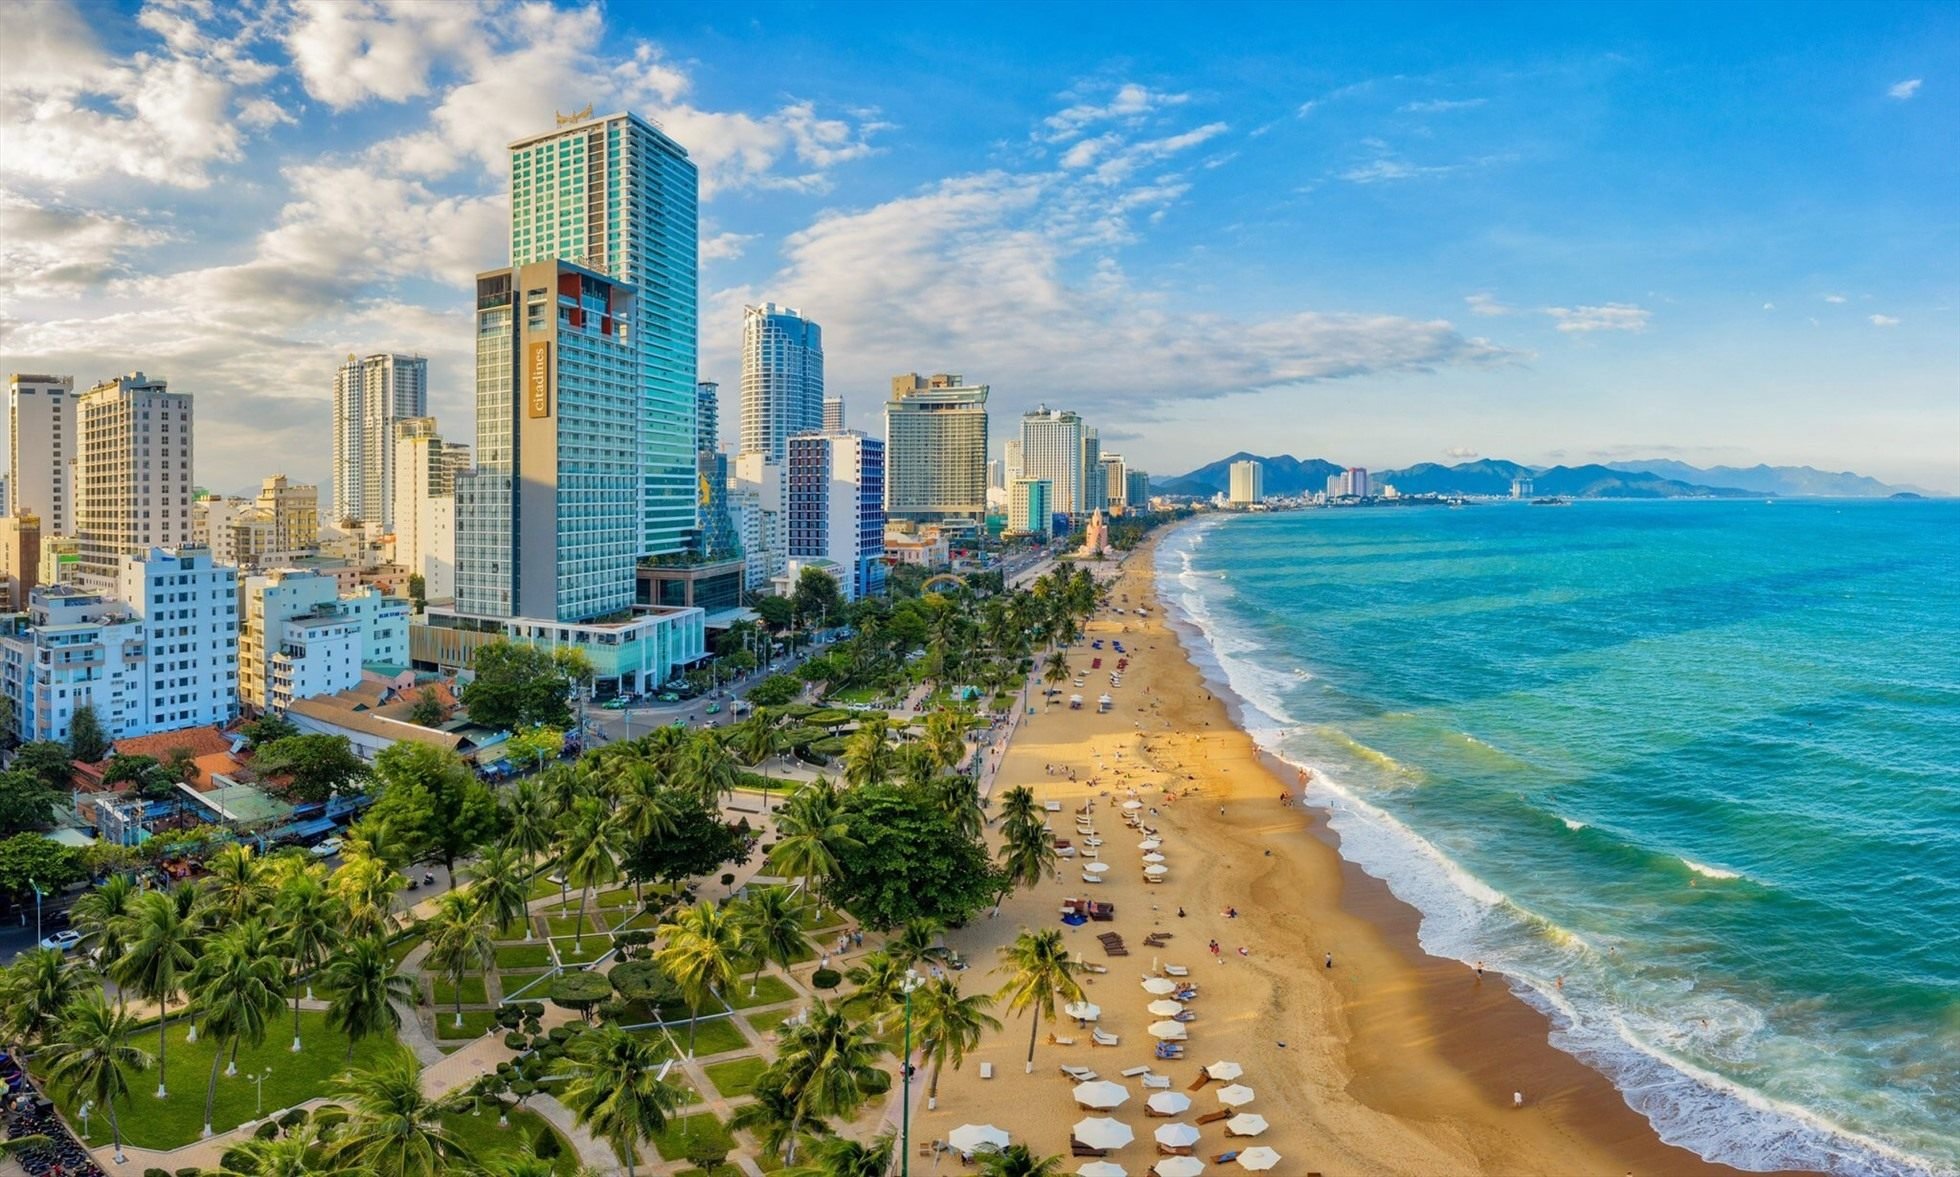 Tăng trưởng du lịch vượt Phú Quốc, Đà Nẵng…Nha Trang bứt tốc thành đô thị hỗn hợp, rộng cửa bất động sản đô thị